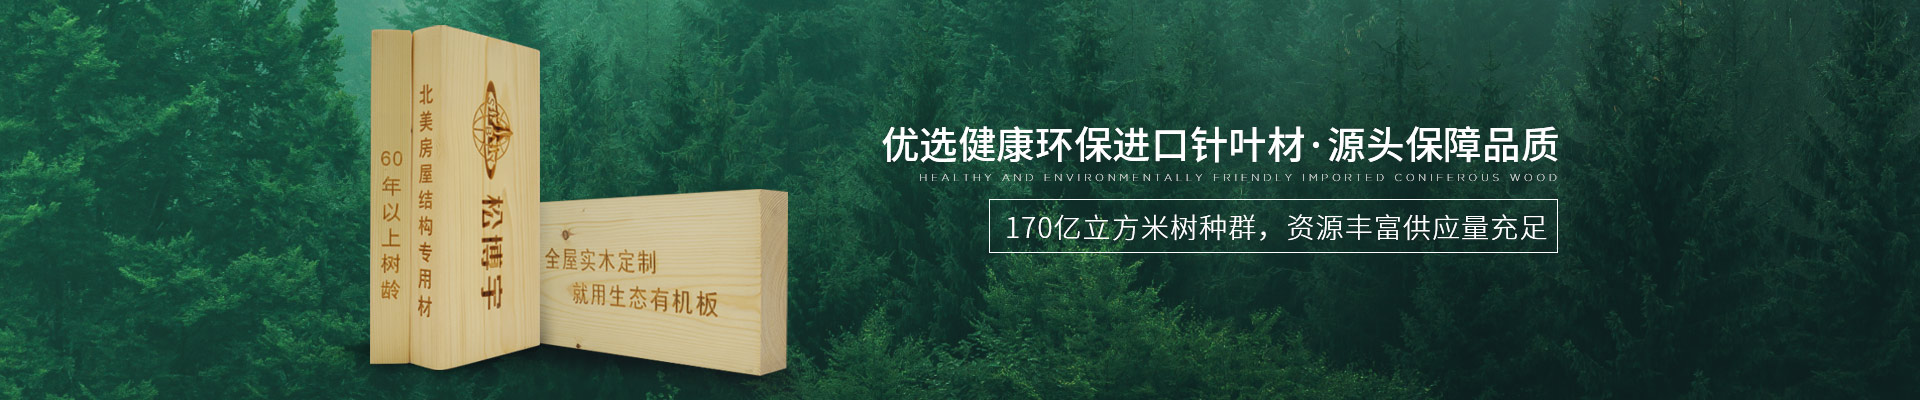 松博宇实木板材-优选健康环保进口针叶材，源头保障品质